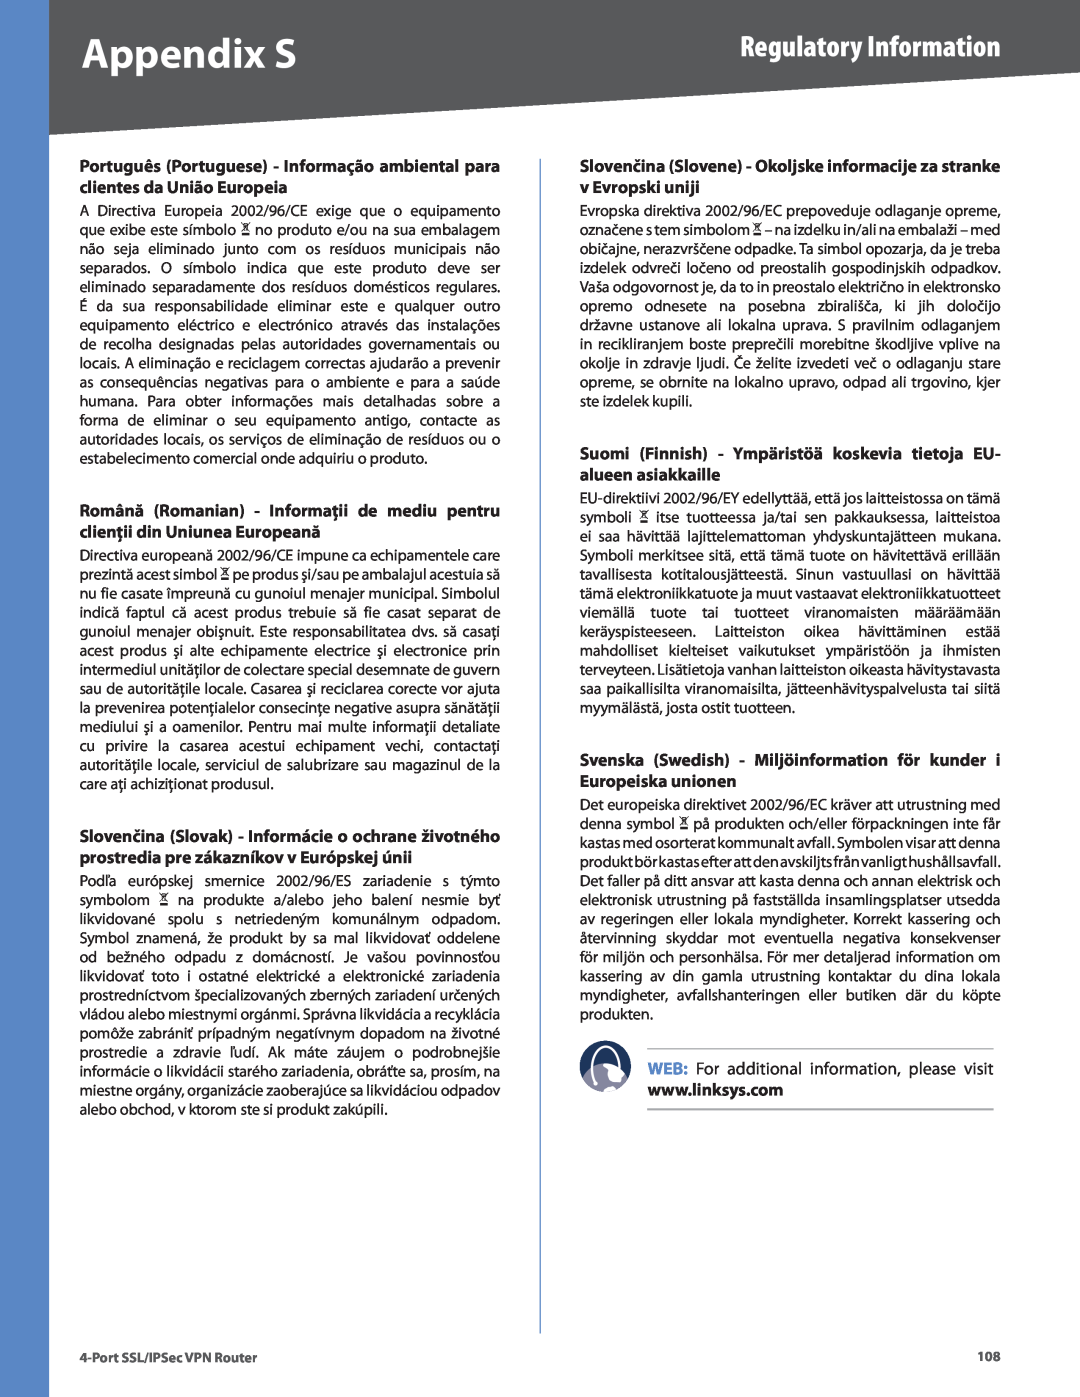 Cisco Systems RVL200 manual Slovenčina Slovene - Okoljske informacije za stranke v Evropski uniji, Appendix S 